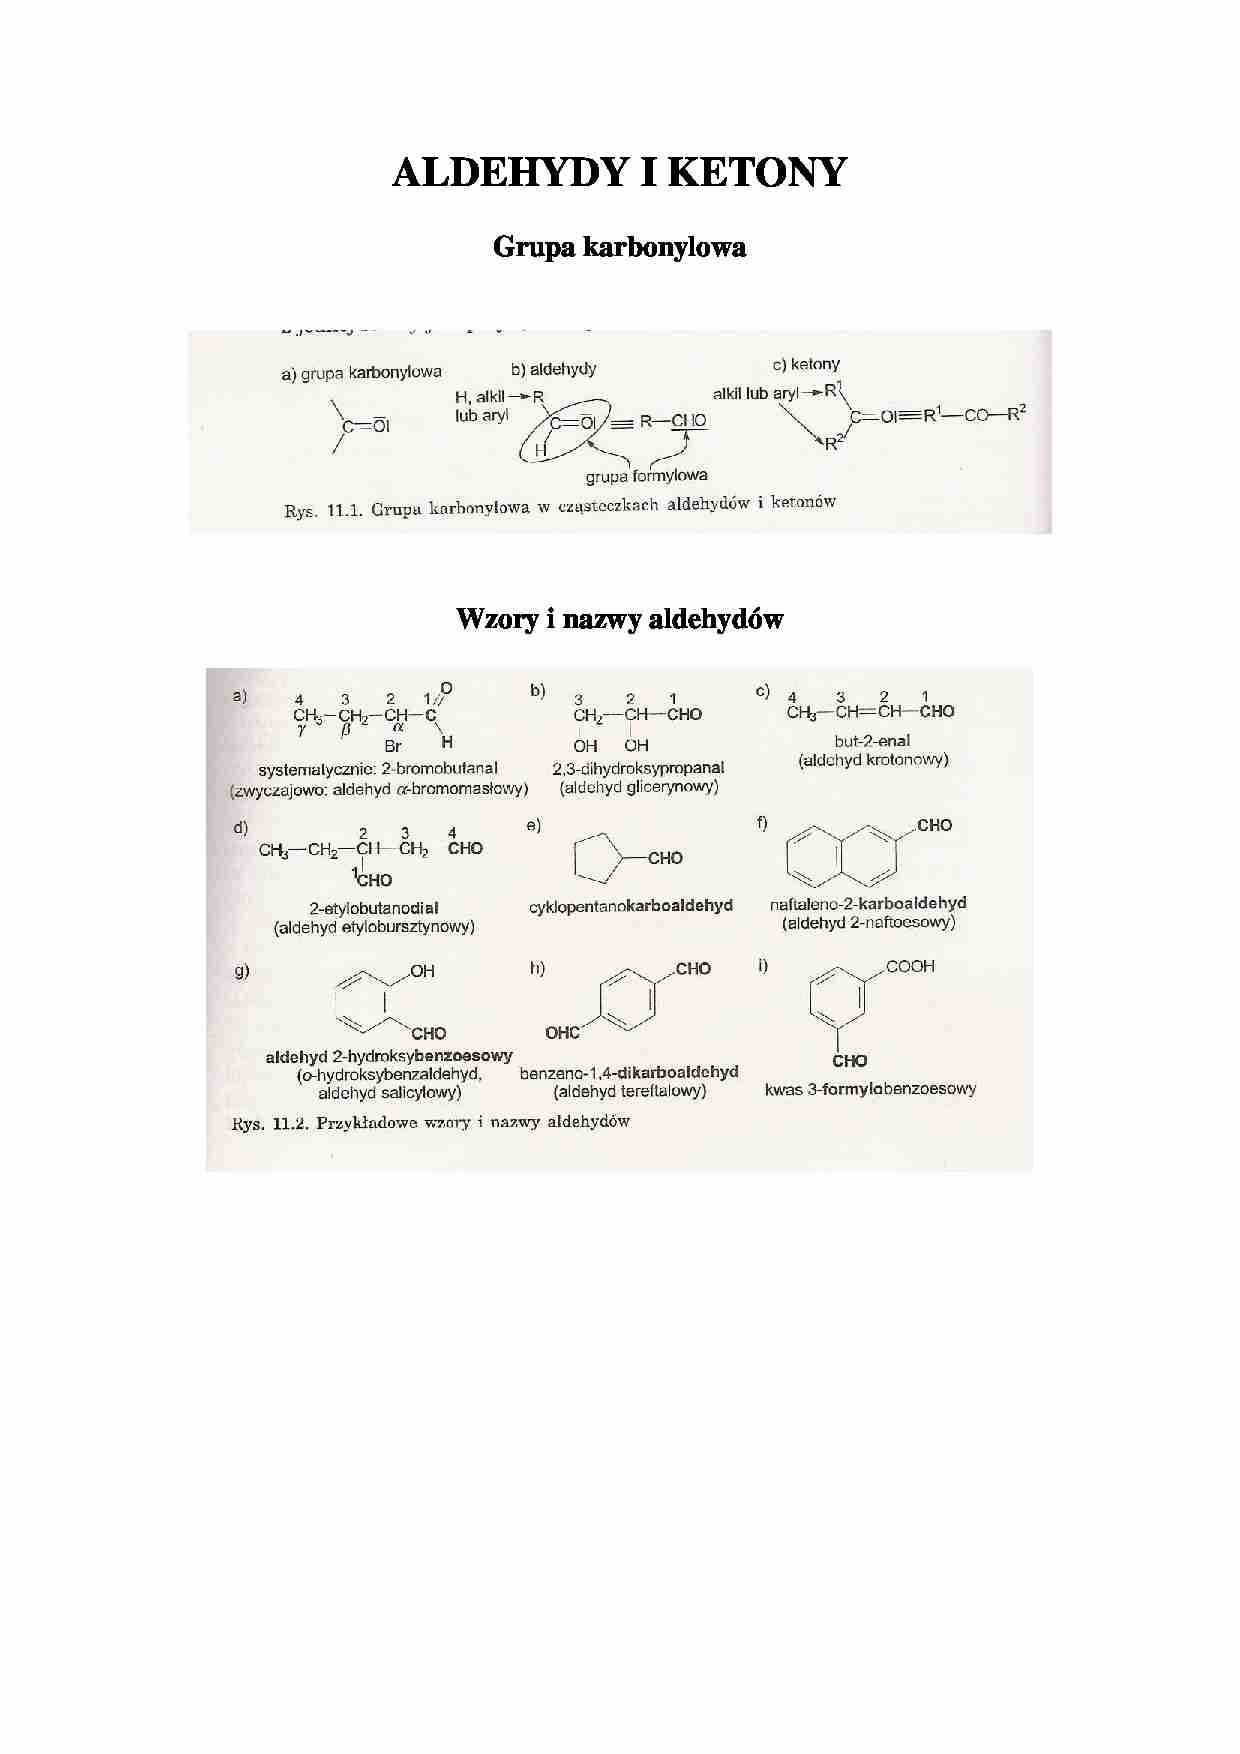 Aldehydy i ketony - grupa karbonylowa - omówienie - strona 1